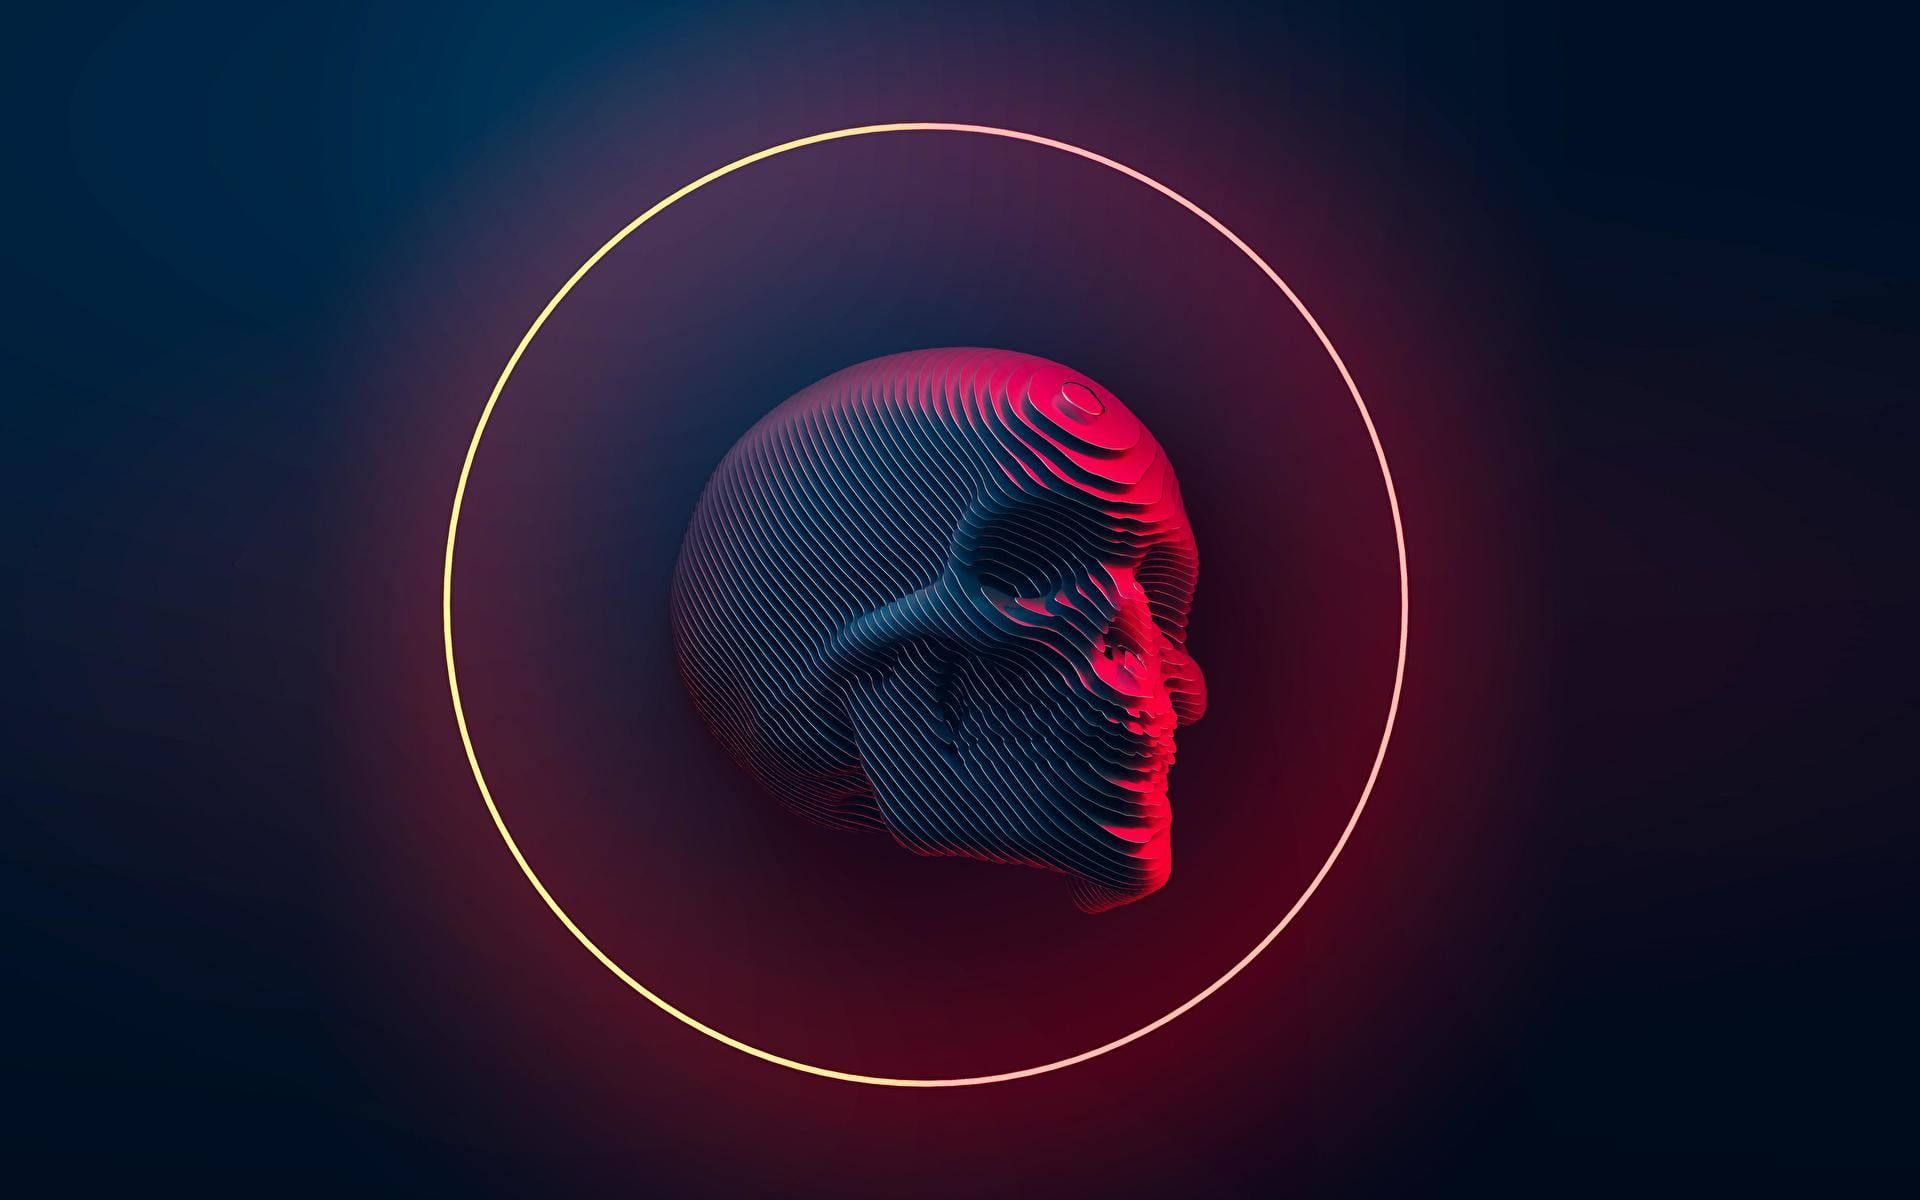  Blender Hintergrundbild 1920x1200. digital #skull #Blender #neon P #wallpaper #hdwallpaper #desktop. Uhd wallpaper, Neon wallpaper, Skull wallpaper